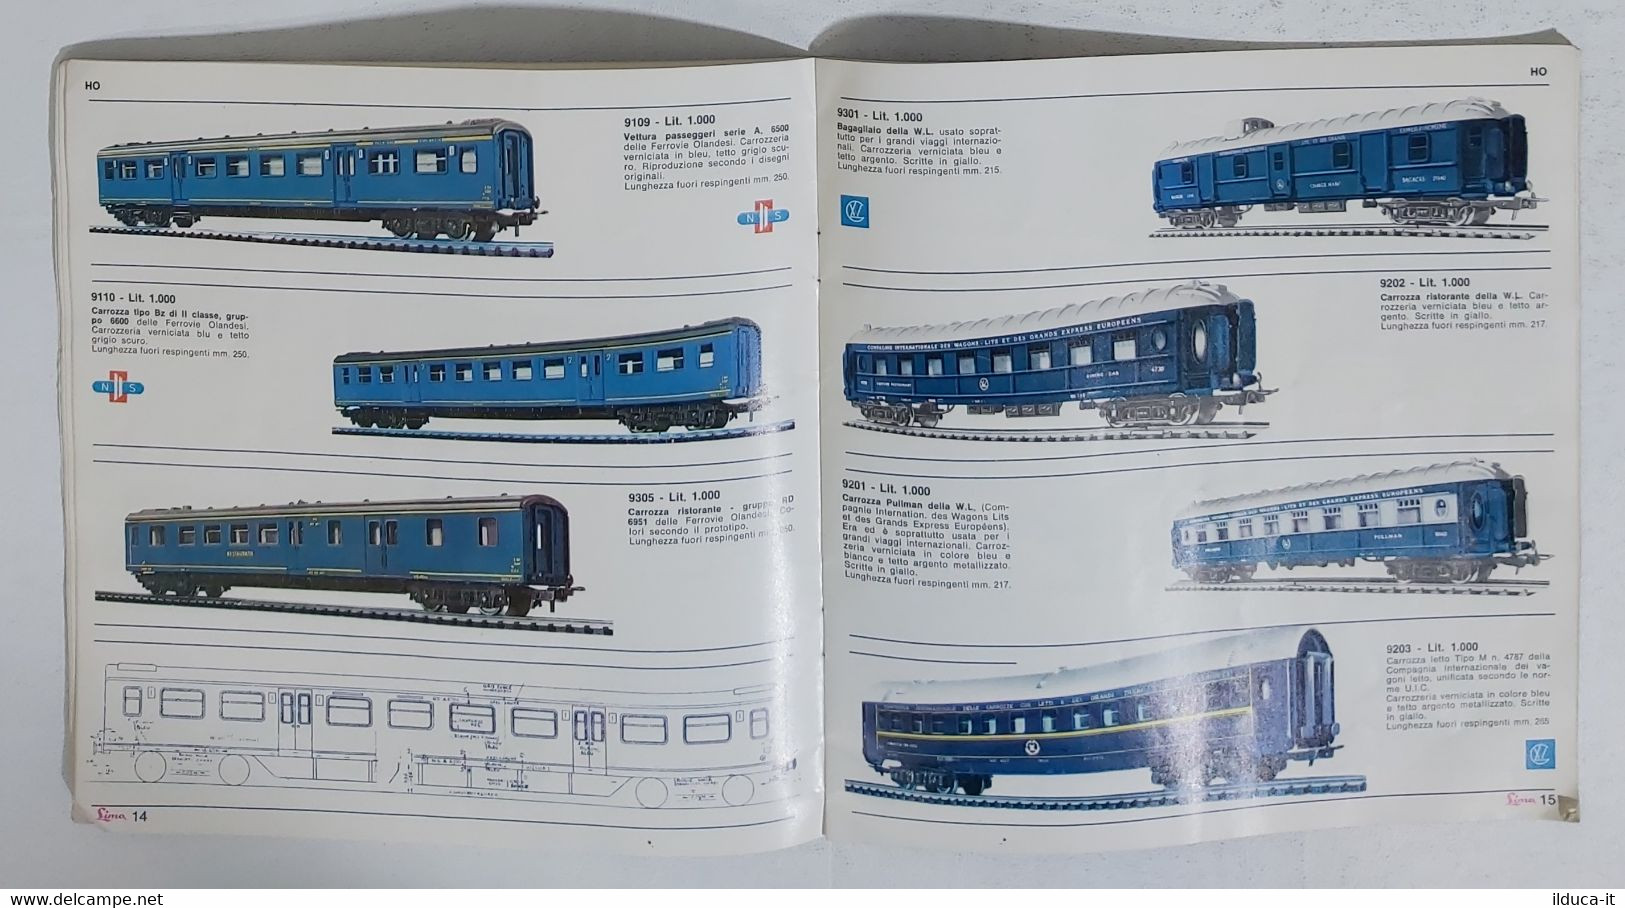 01921 Catalogo Modellismo Ferroviario Lima - X Edizione 1966-67 - Italy